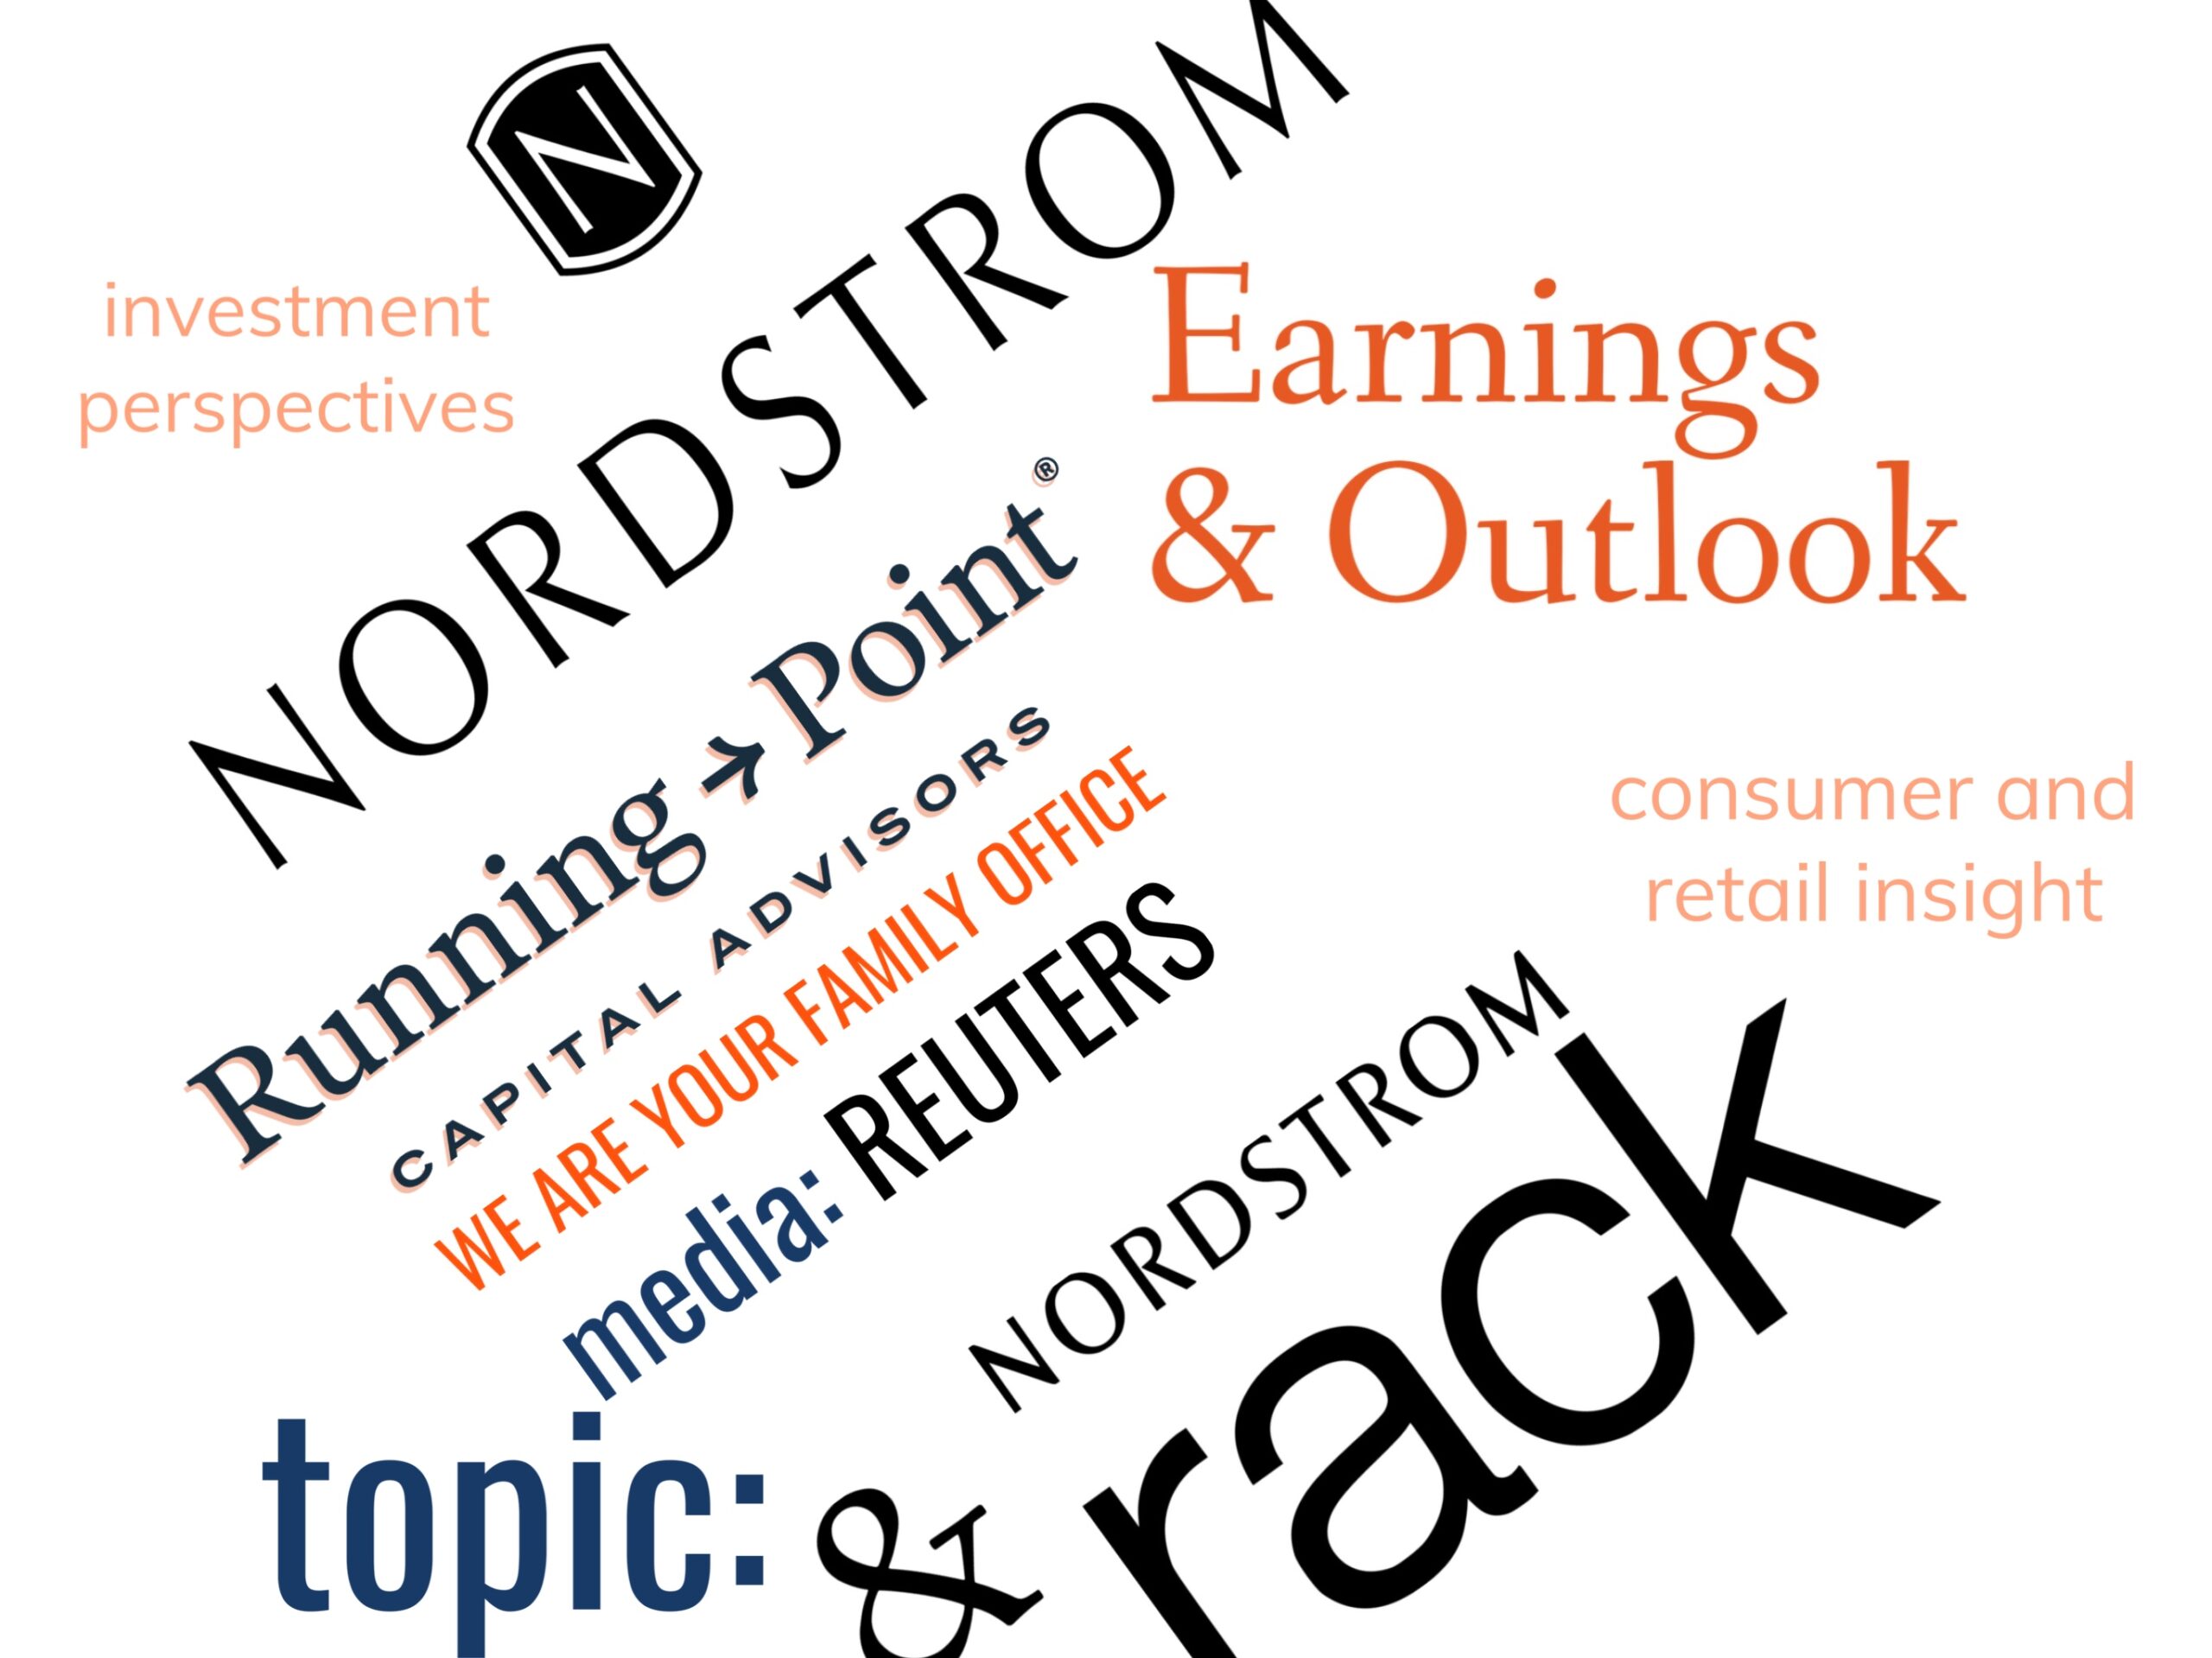 Reuters: Nordstrom—Earnings & Outlook